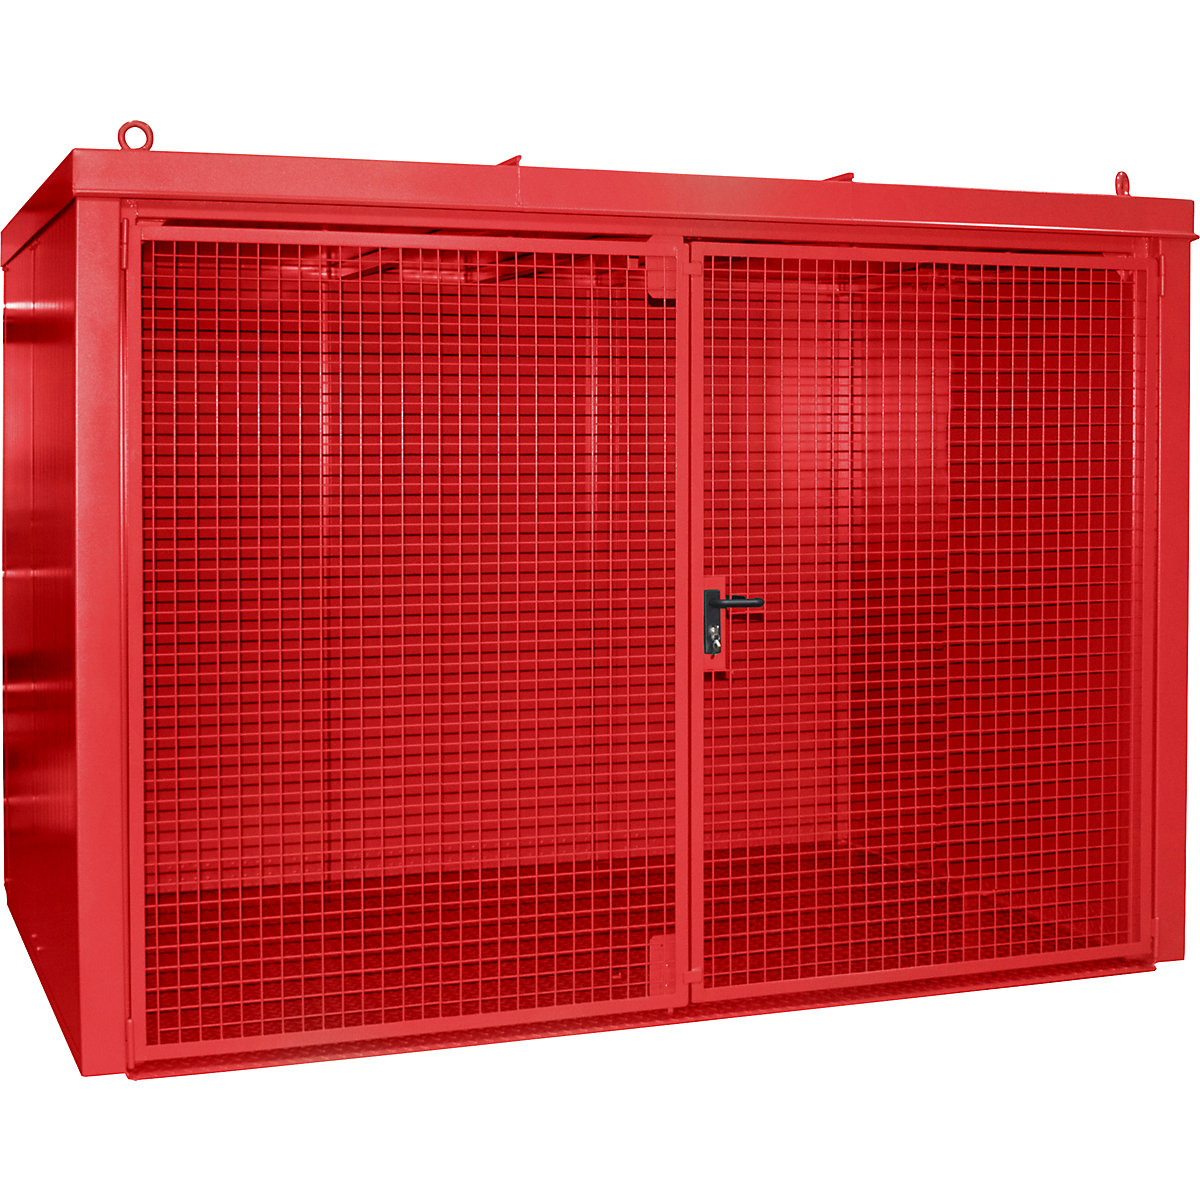 Gasflaschencontainer, feuerbeständig eurokraft pro, für 60 Flaschen mit Ø 230 mm, rot